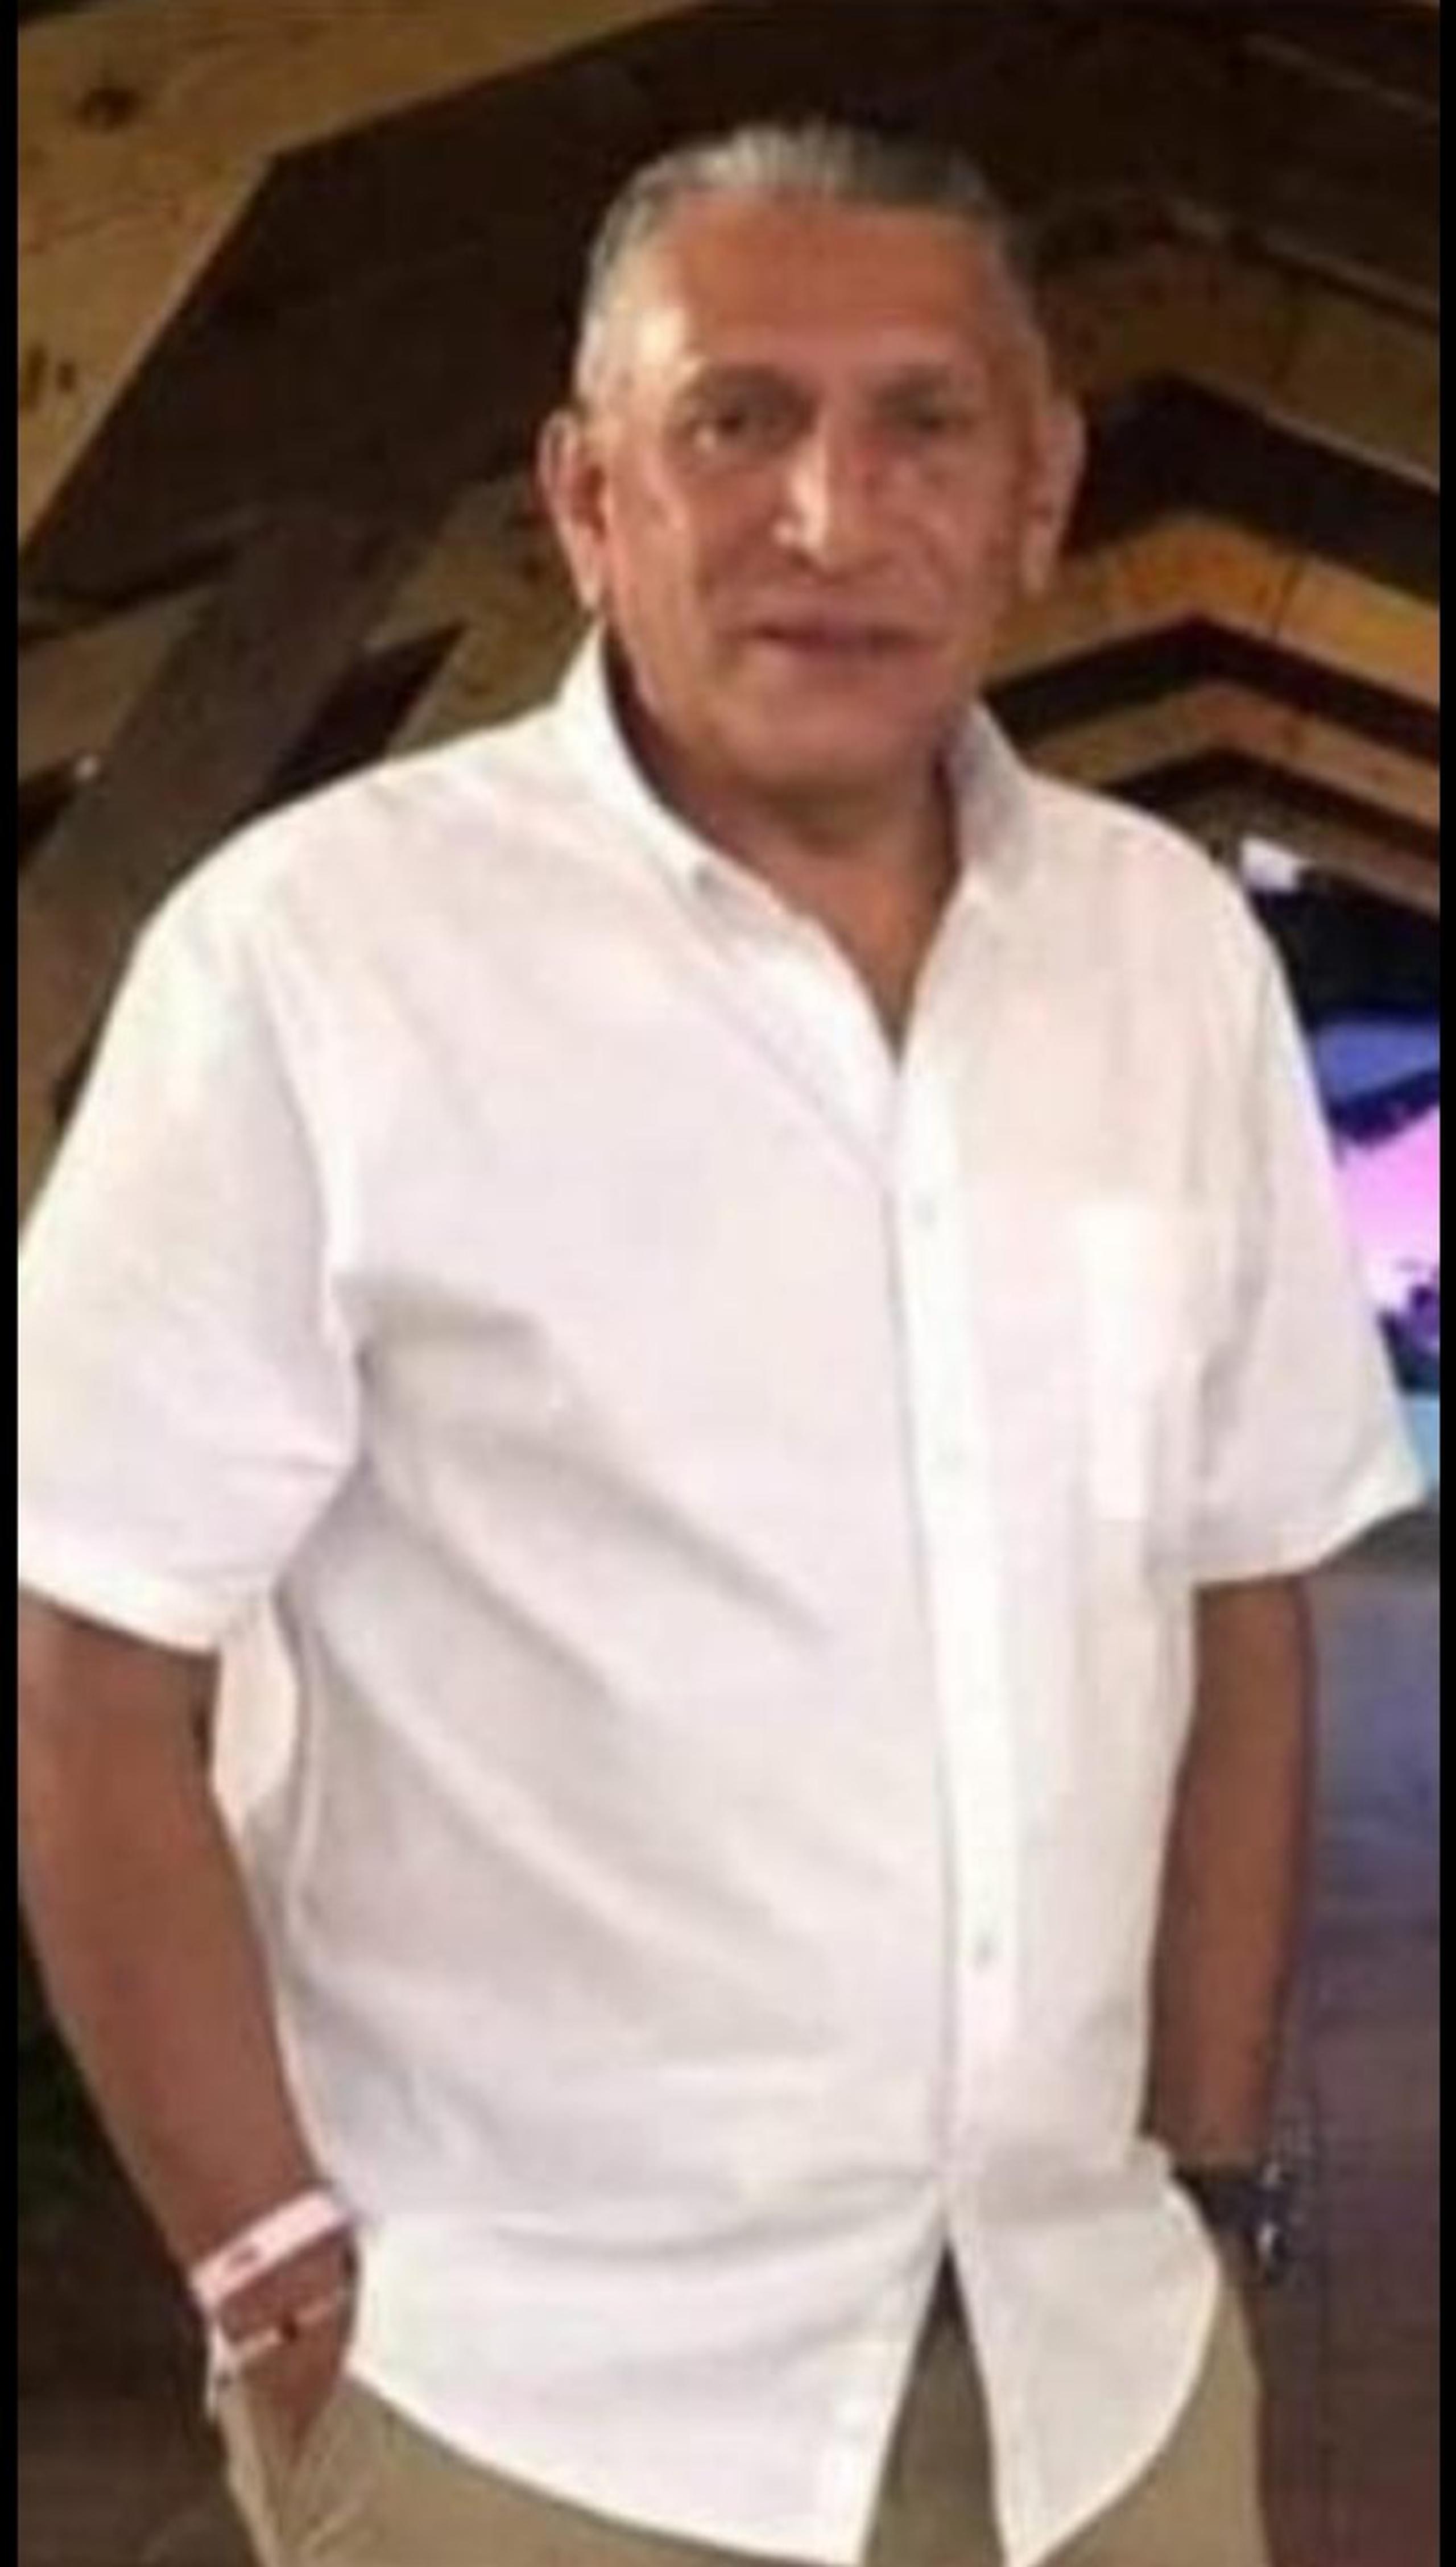 Eugenio Martínez Rodríguez, de 57 años, quien se encuentra desaparecido desde el sábado pasado, cuando fue visto por última vez en el barrio San Lorenzo, en Morovis.